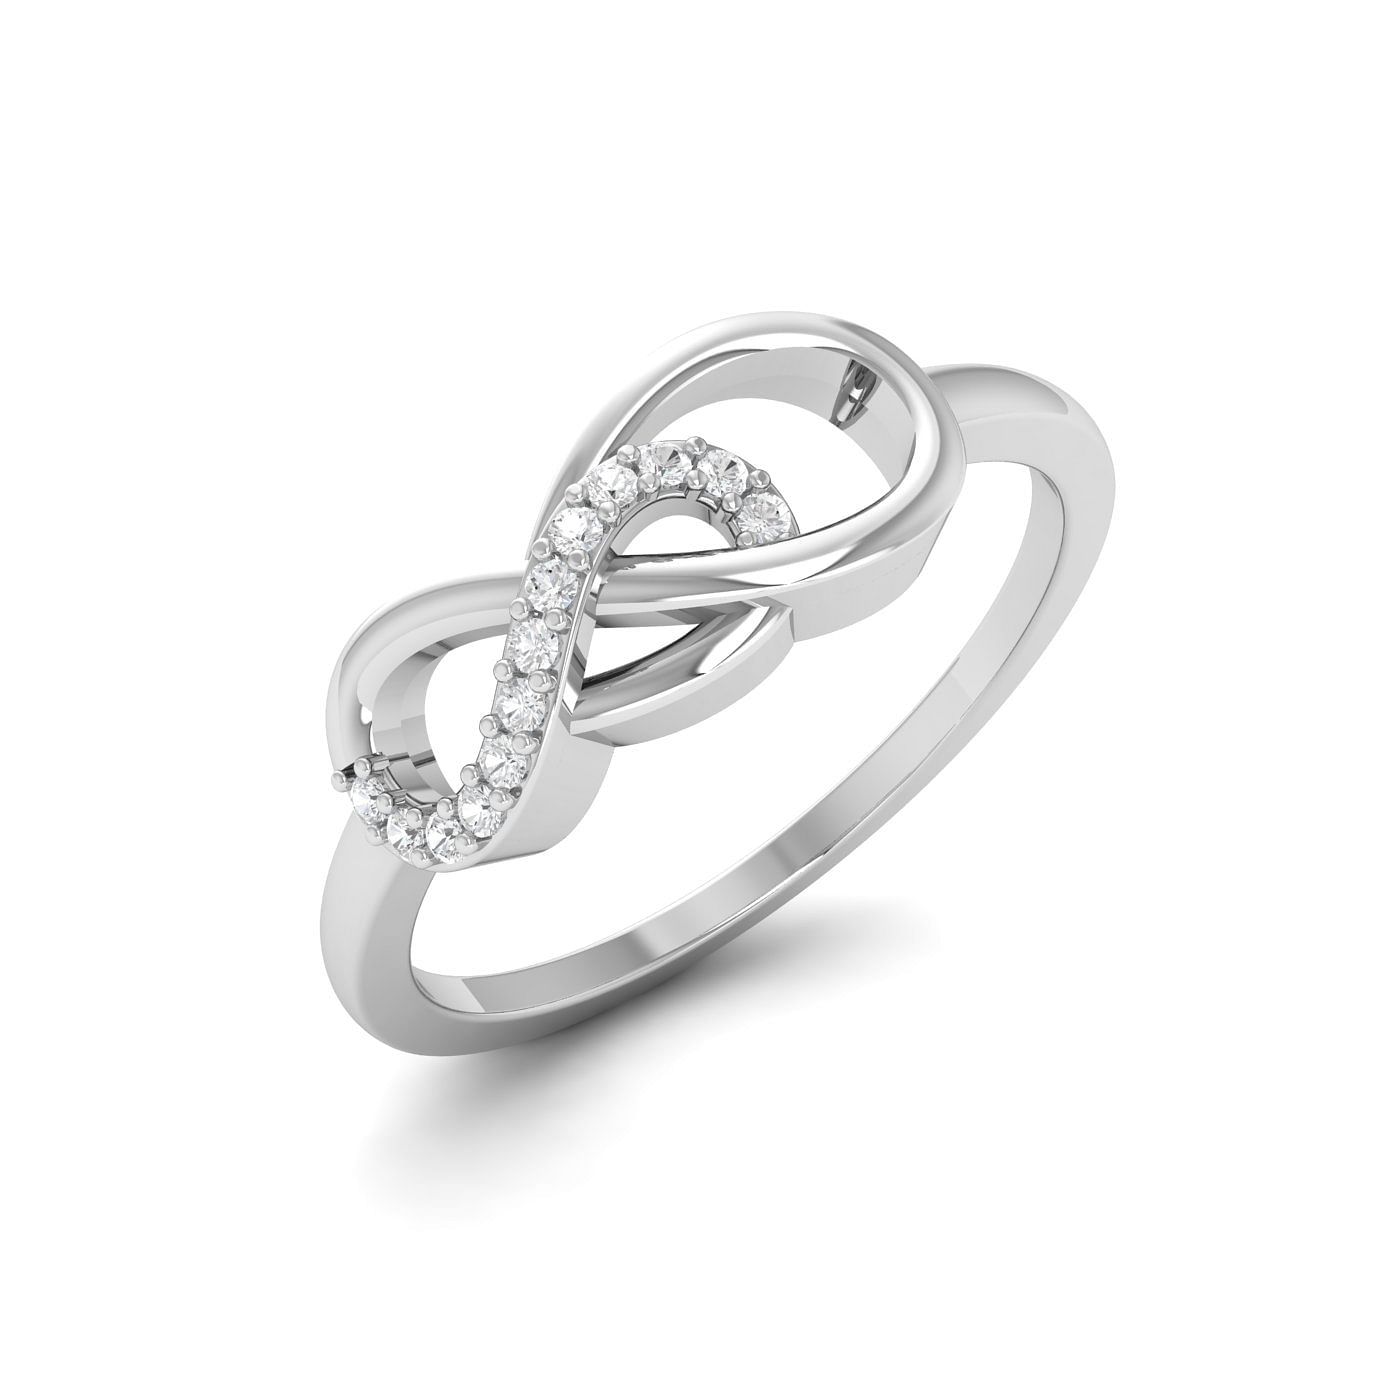 Modern Design White Gold Diamond Ring Infinity Century Diamond Ring For Women